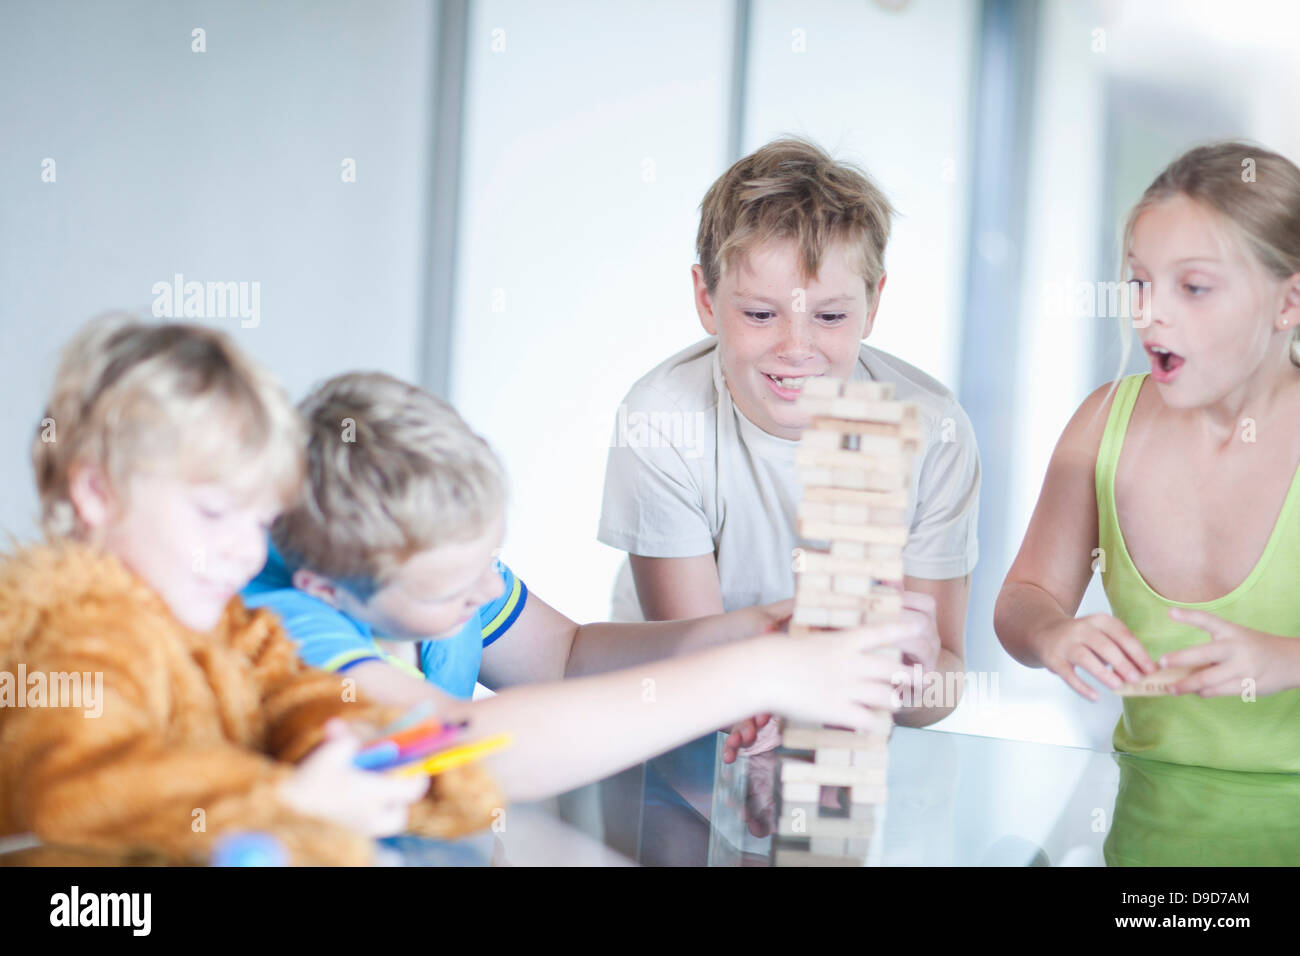 Children playing wood blocks Stock Photo